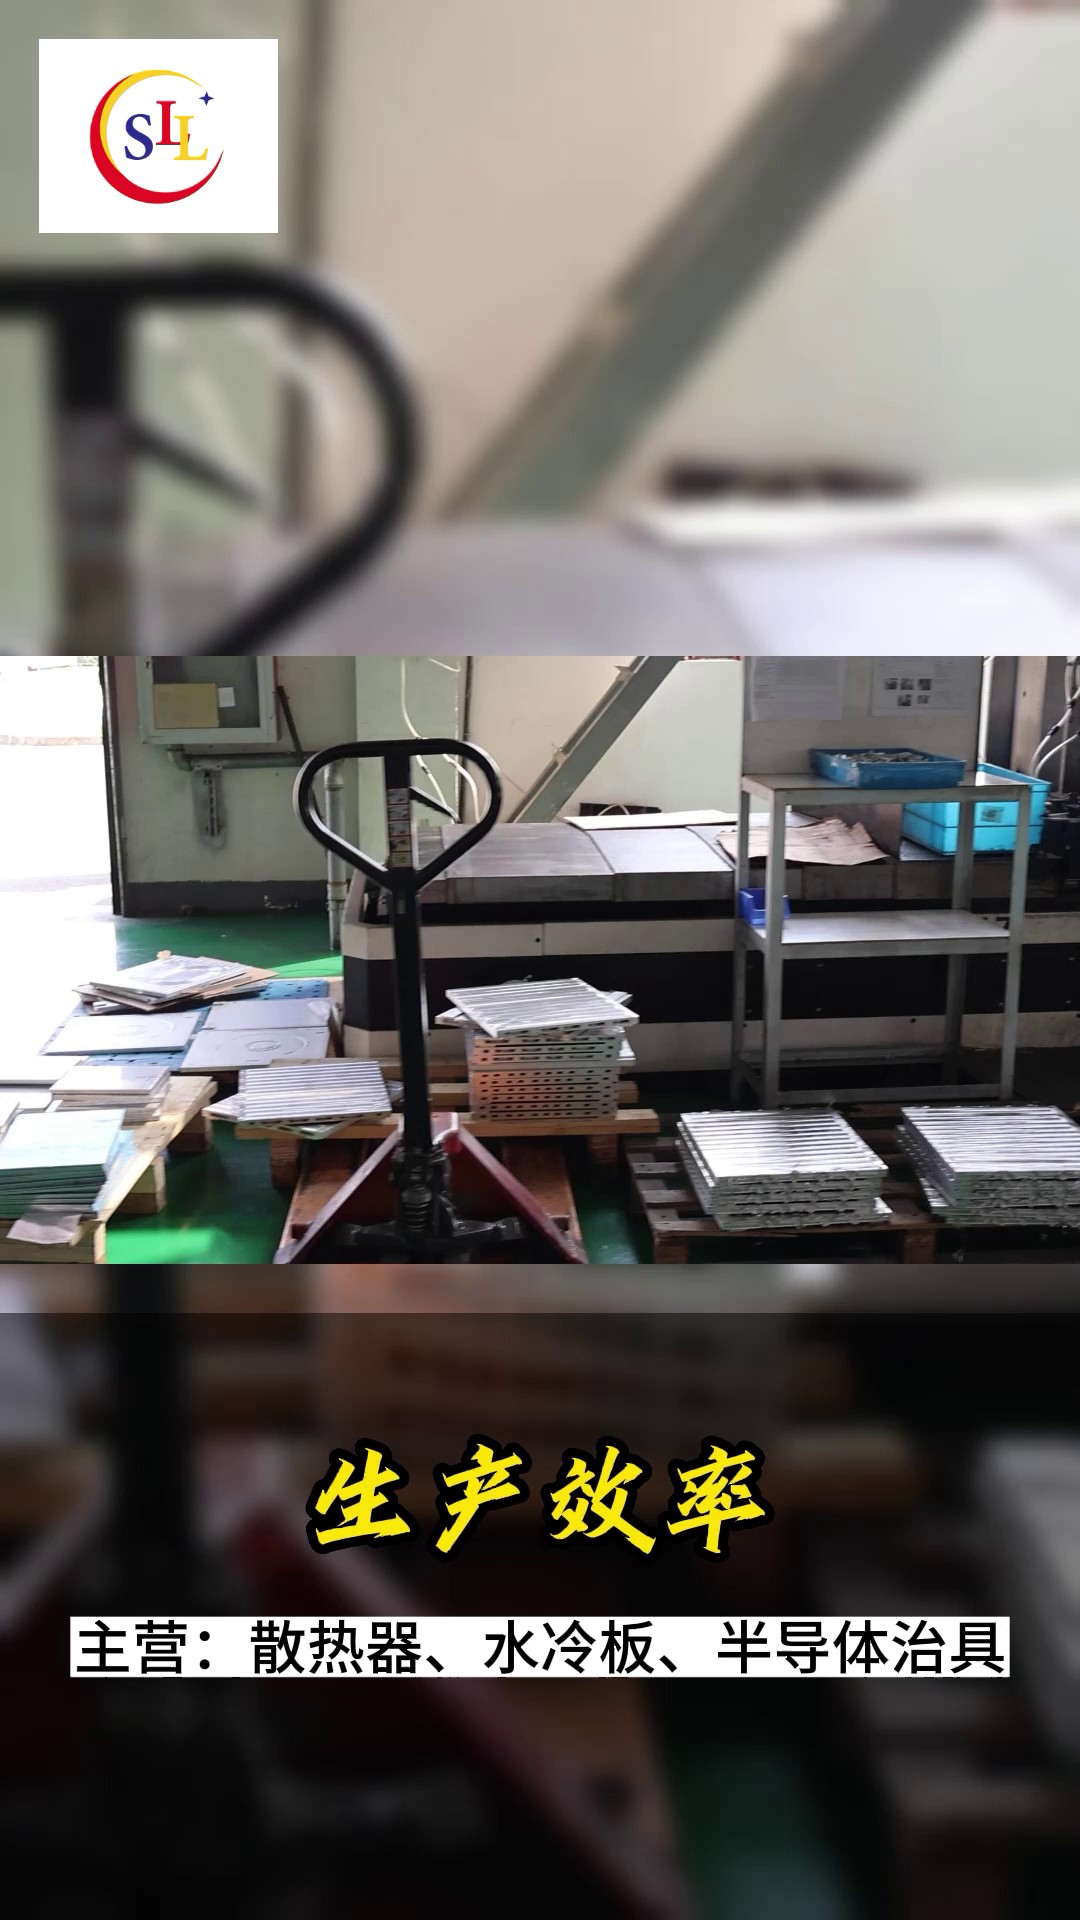 上海定制半导体石墨治具供应商,半导体石墨治具